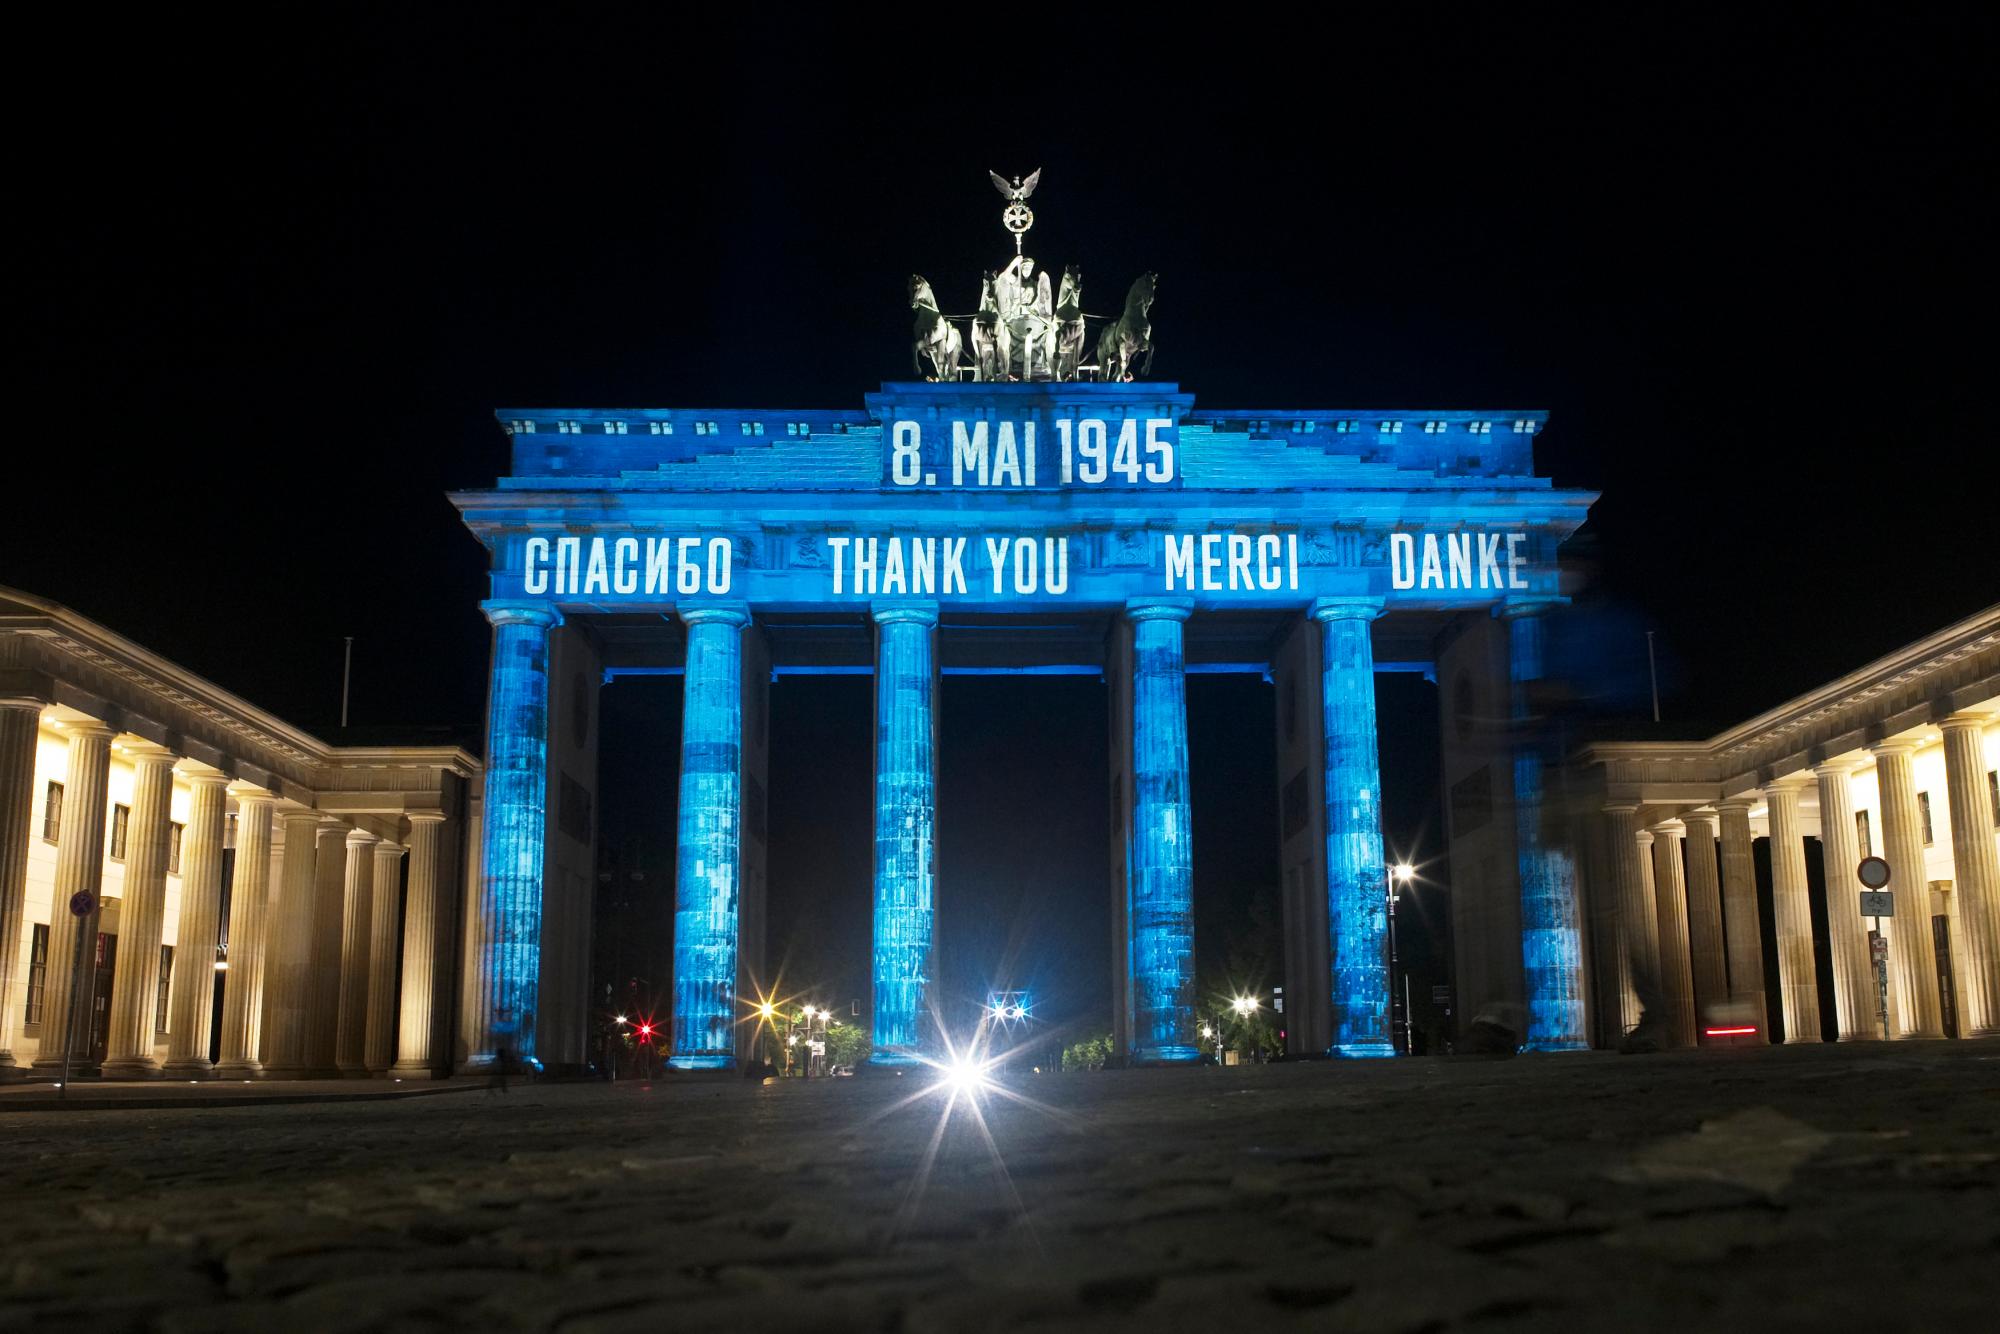 La histórica Puerta de Brandenburgo de Alemania se ilumina para conmemorar el 75 aniversario del Día de la Victoria y el final de la Segunda Guerra Mundial en Europa, en Berlín, Alemania, el viernes 8 de mayo de 2020. Con la proyección de la palabra “Gracias” en varios idiomas Berlín conmemora la liberación de Alemania por las fuerzas aliadas en 1945. (Foto AP / Markus Schreiber)